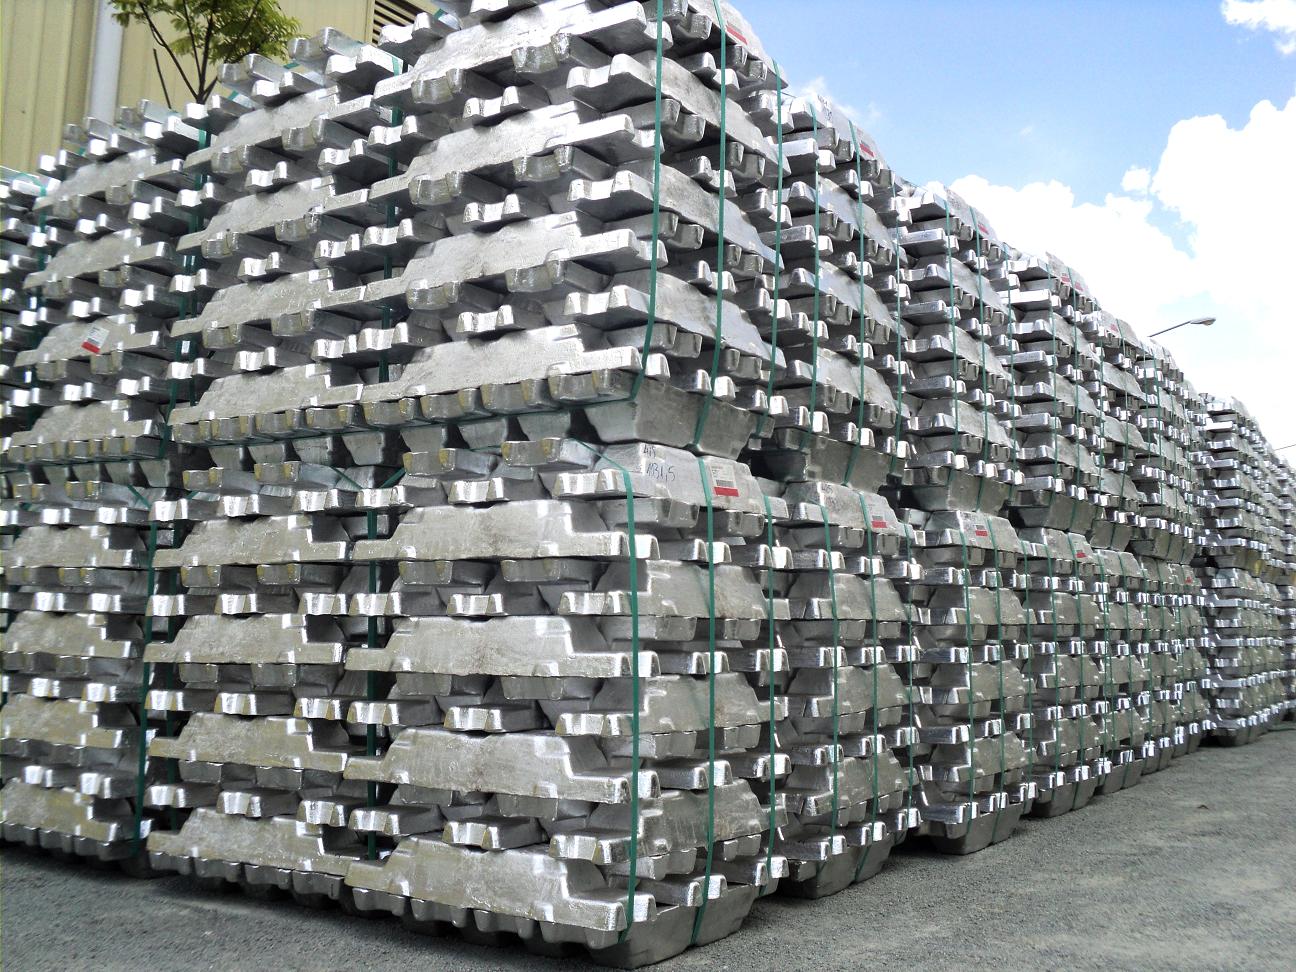 Iran zinc, aluminum, molybdenum exports rise in 9 months